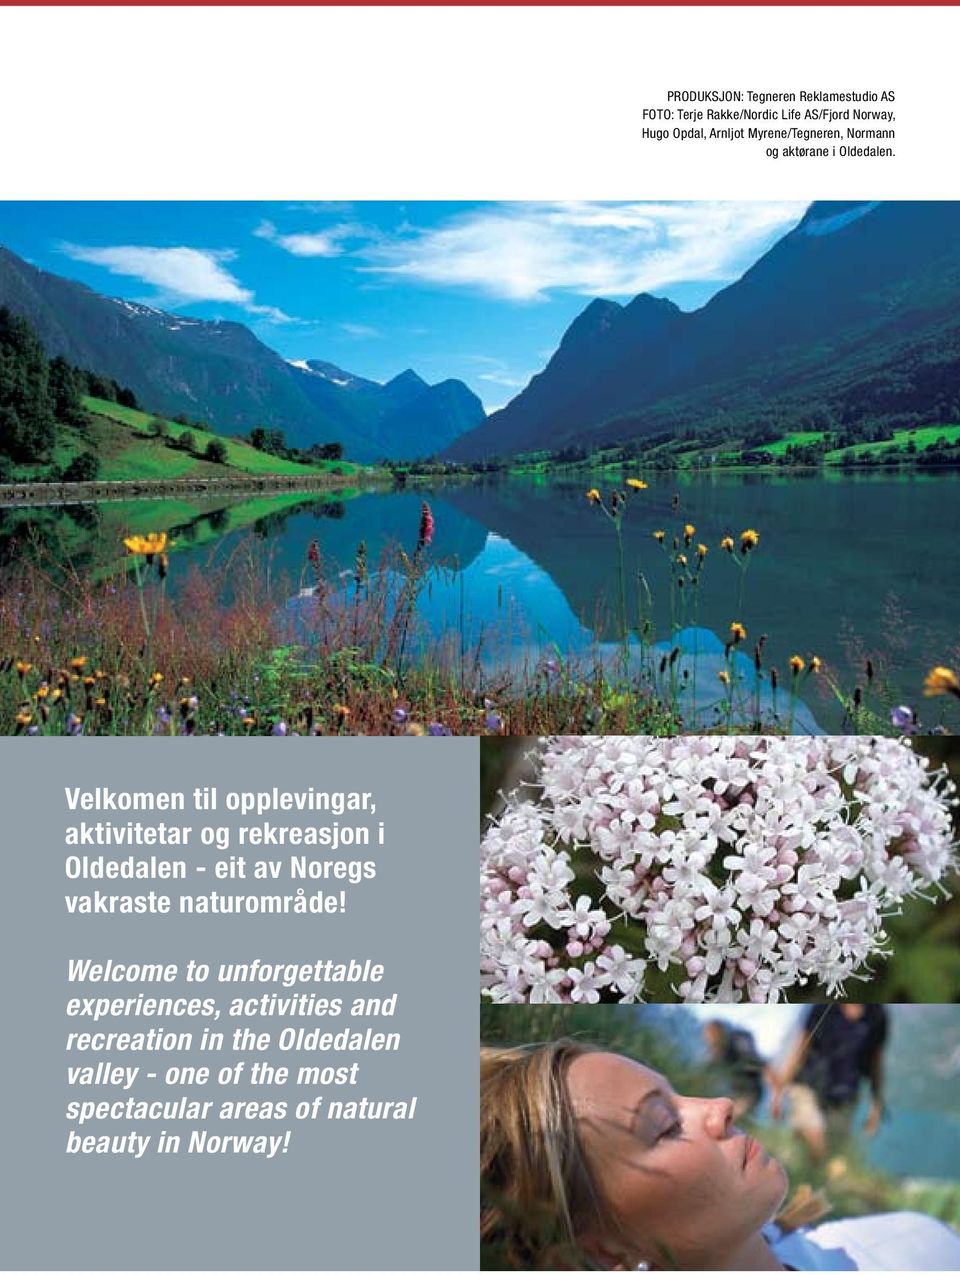 Velkomen til opplevingar, aktivitetar og rekreasjon i Oldedalen - eit av Noregs vakraste naturområde!